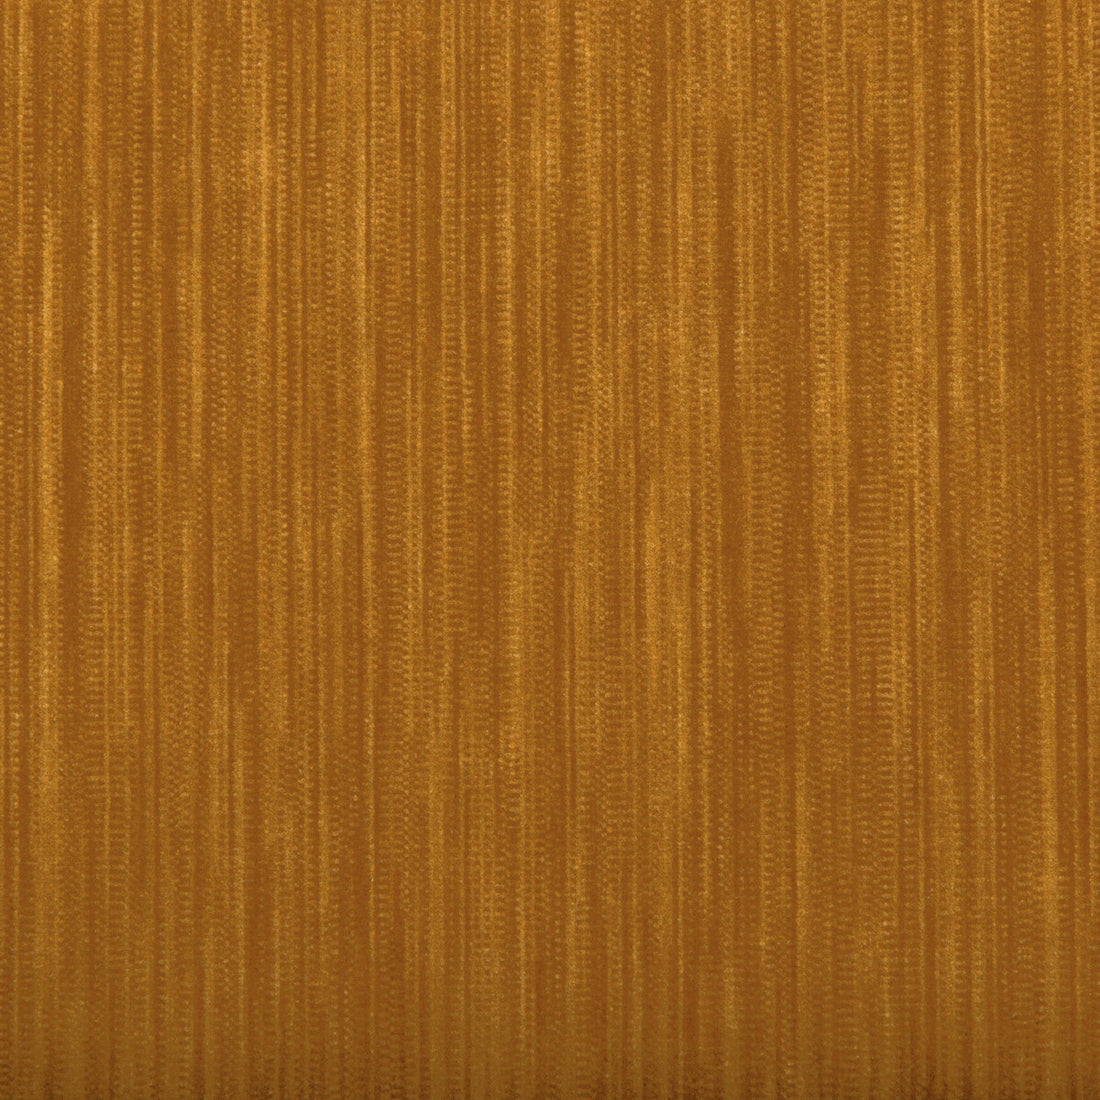 Barnwell Velvet fabric in honey color - pattern 2020180.212.0 - by Lee Jofa in the Barnwell Velvet collection